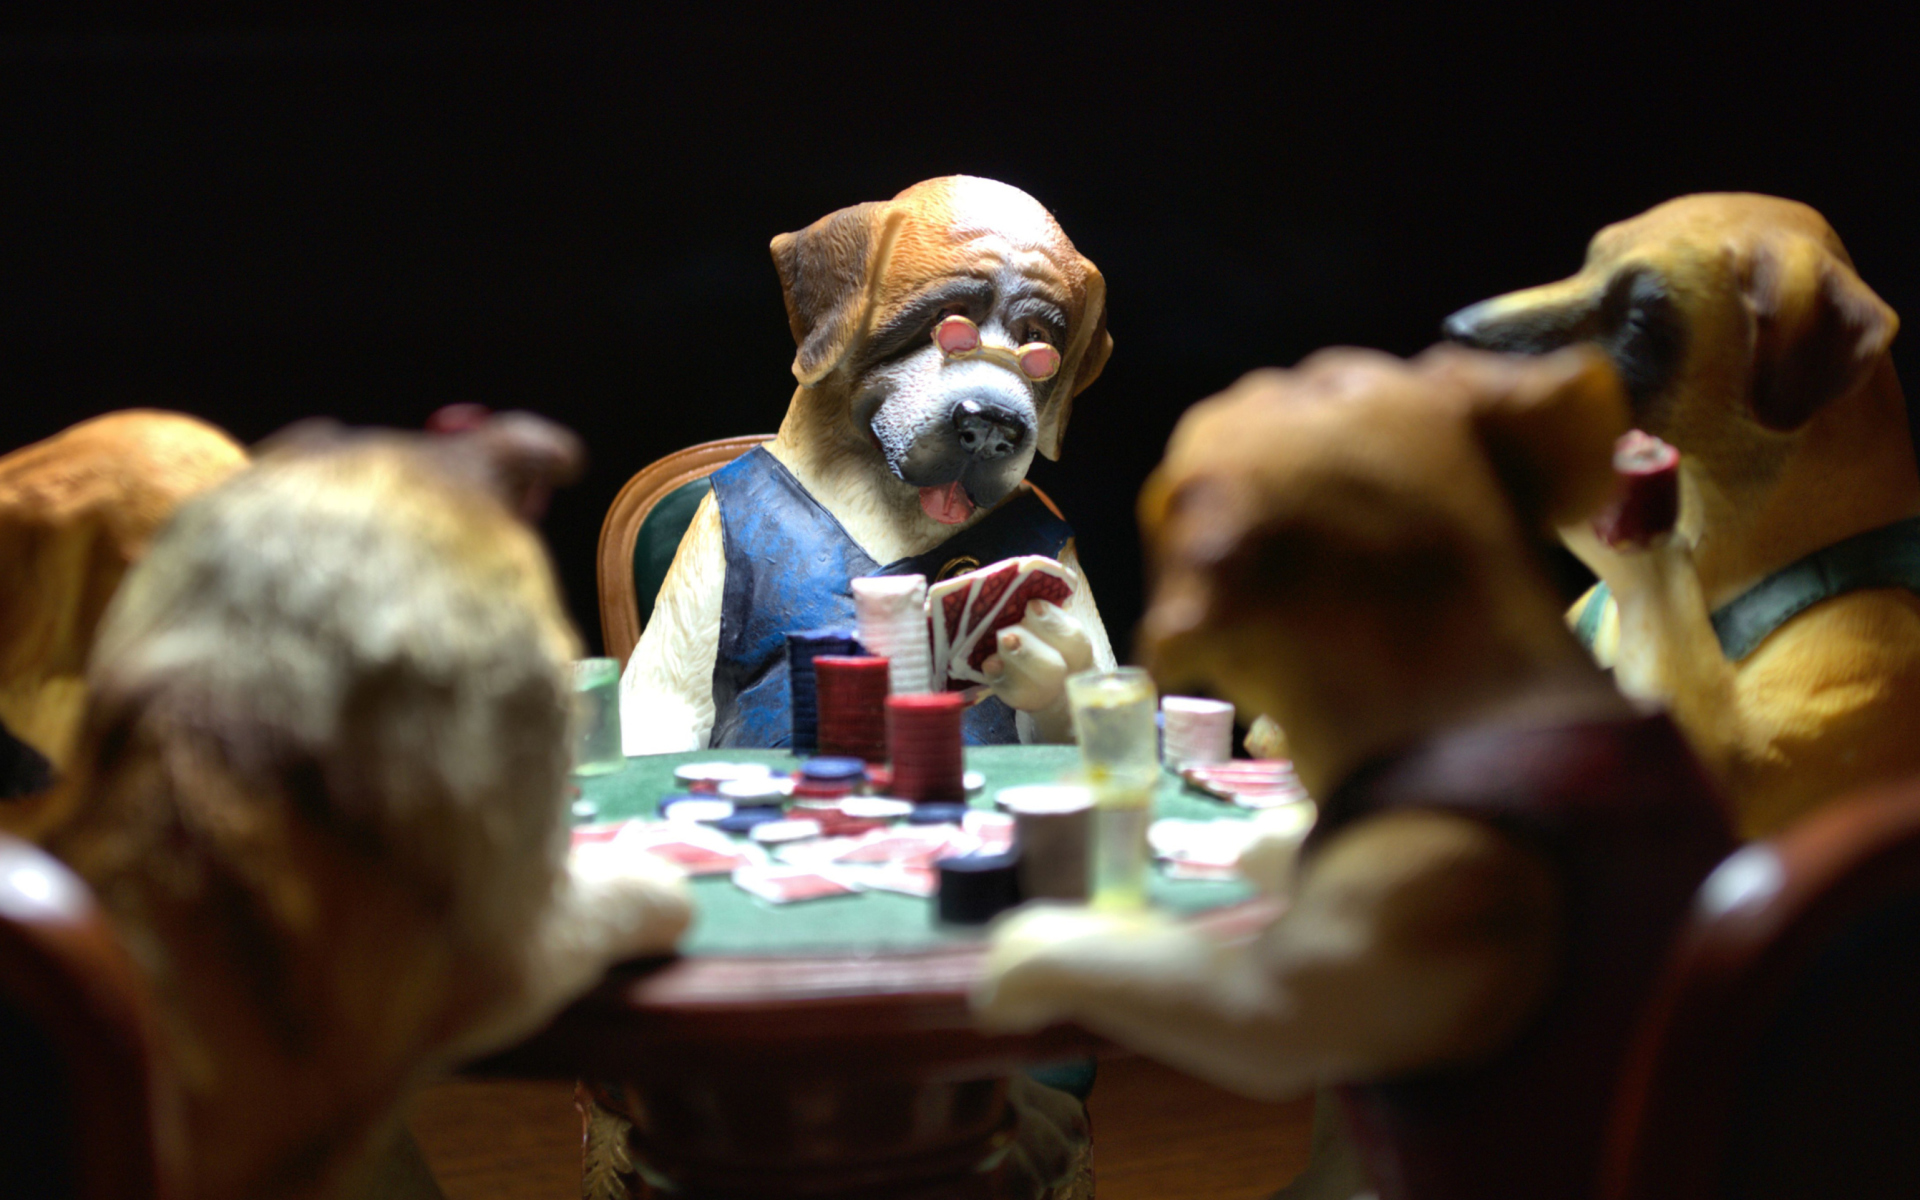 [70+] Dogs Playing Poker Wallpaper on WallpaperSafari